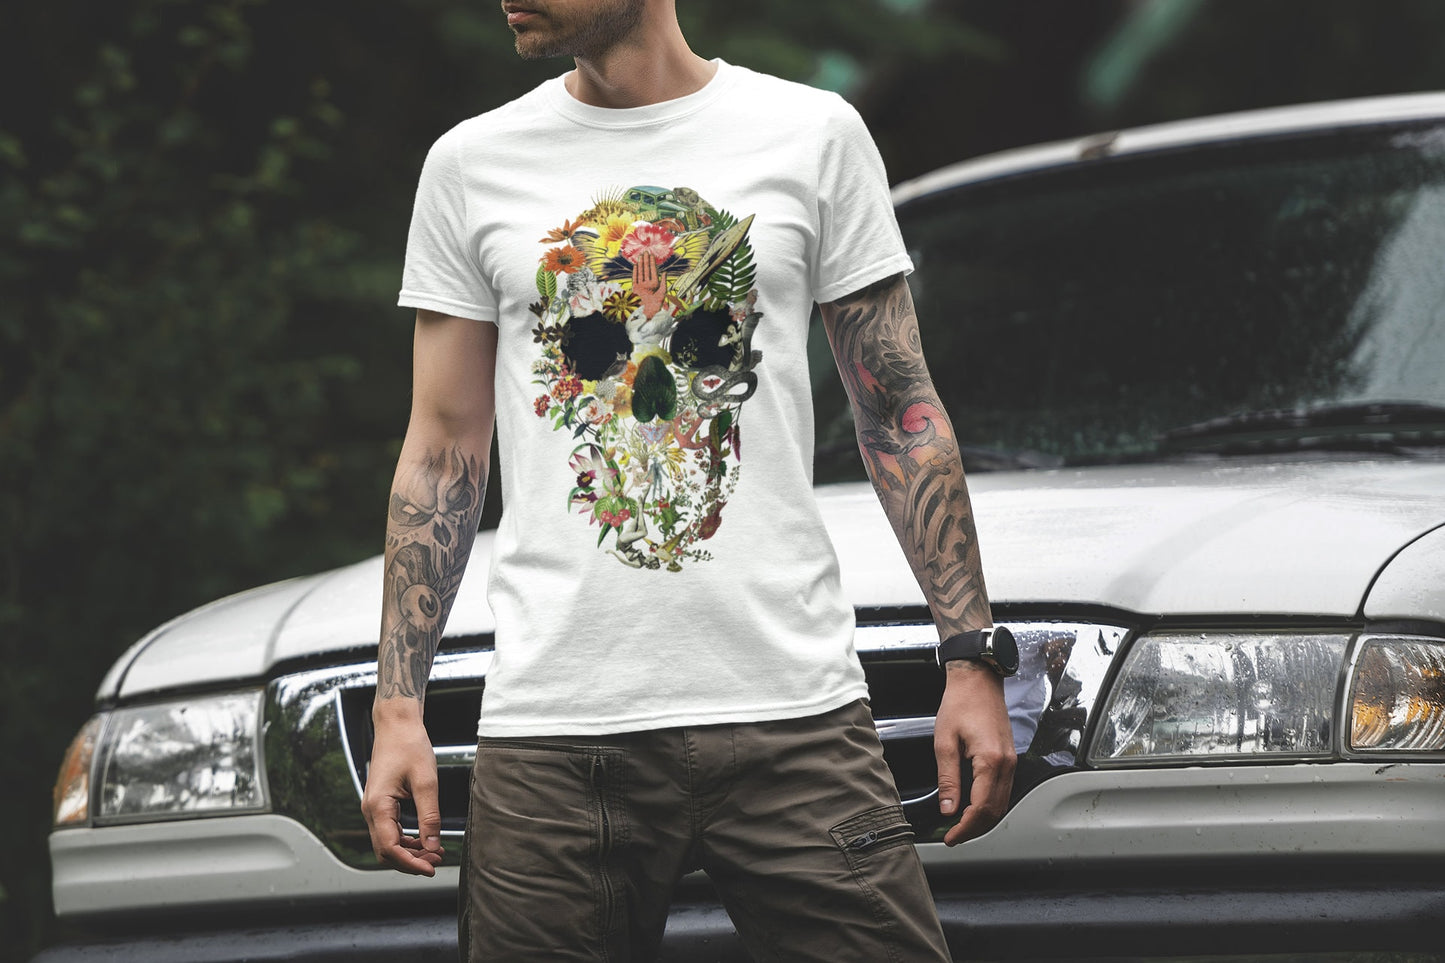 Skull Art Men's T shirt, Sugar Skull Print Shirt Gift For Him, Bella Canvas Gothic Skull T Shirt Gift, Floral Skull Art Unisex Tee Gift